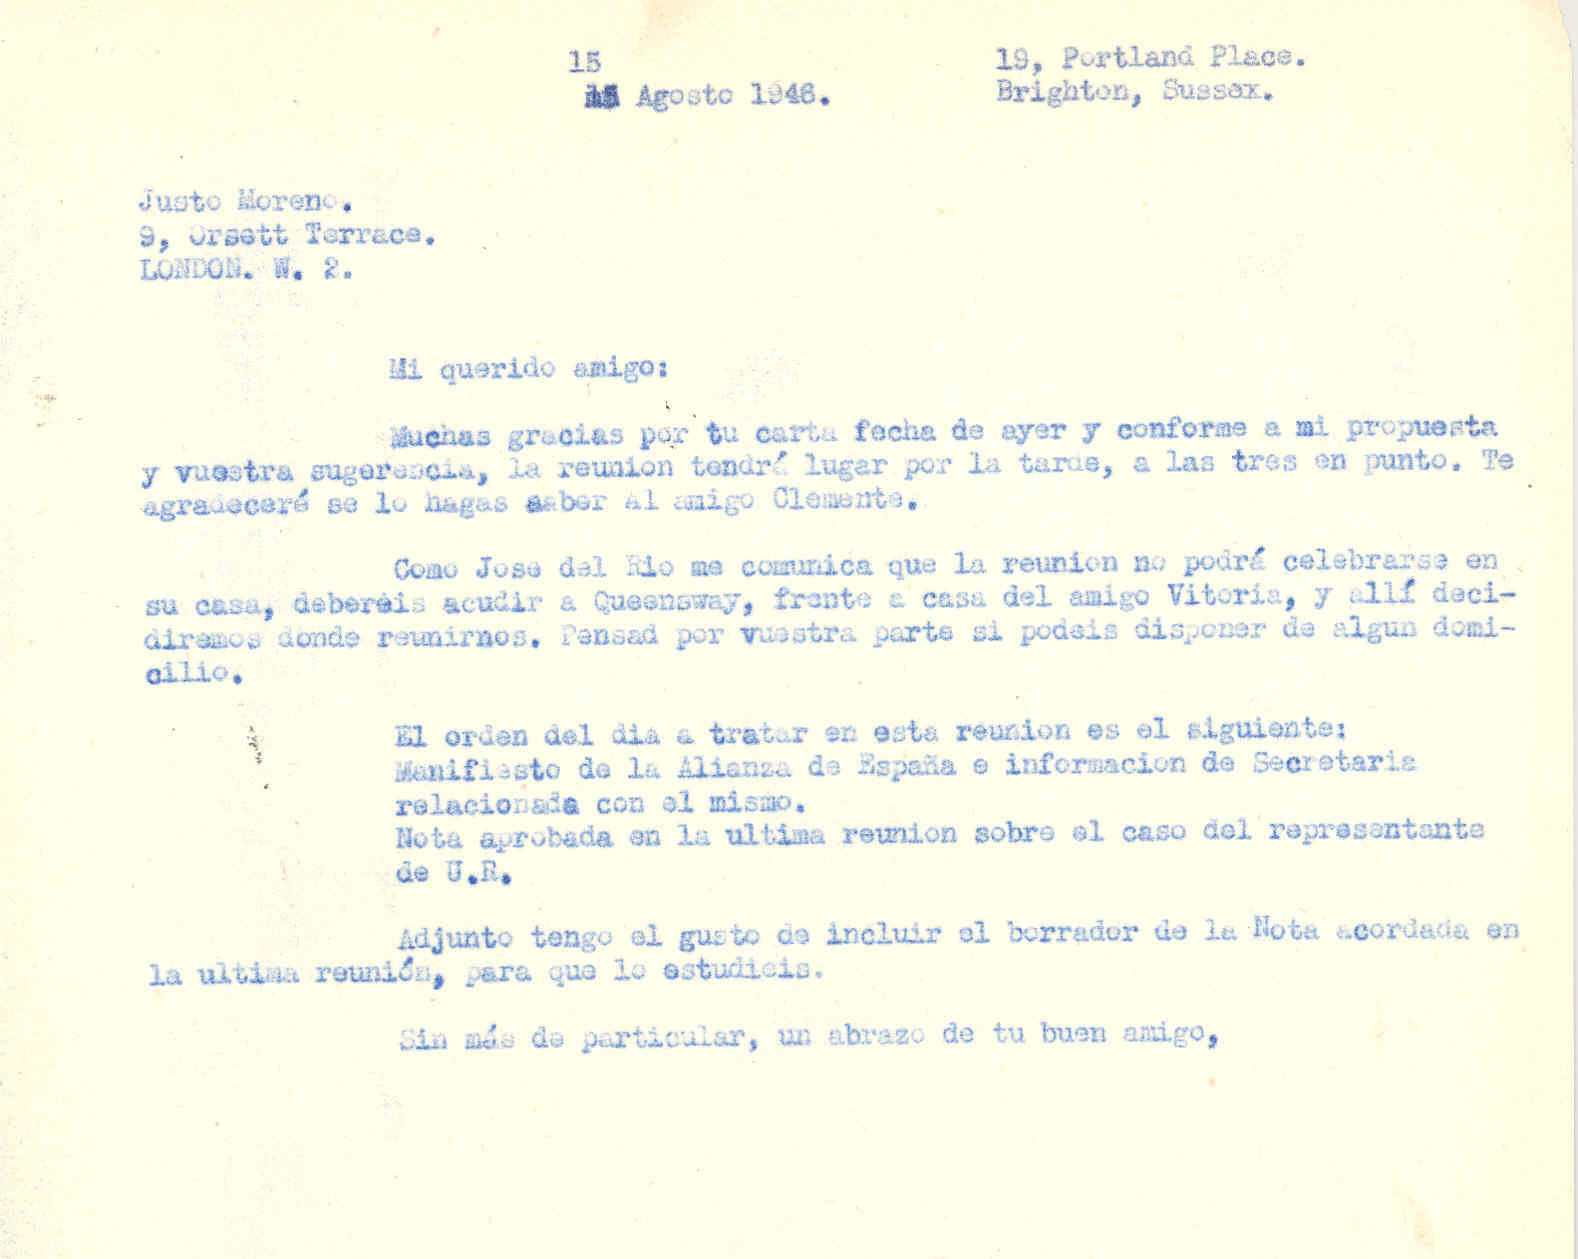 Carta a Justo Moreno informando de la fecha y lugar de la próxima reunión de la ANFD para tratar el tema del manifiesto de la Alianza de España.